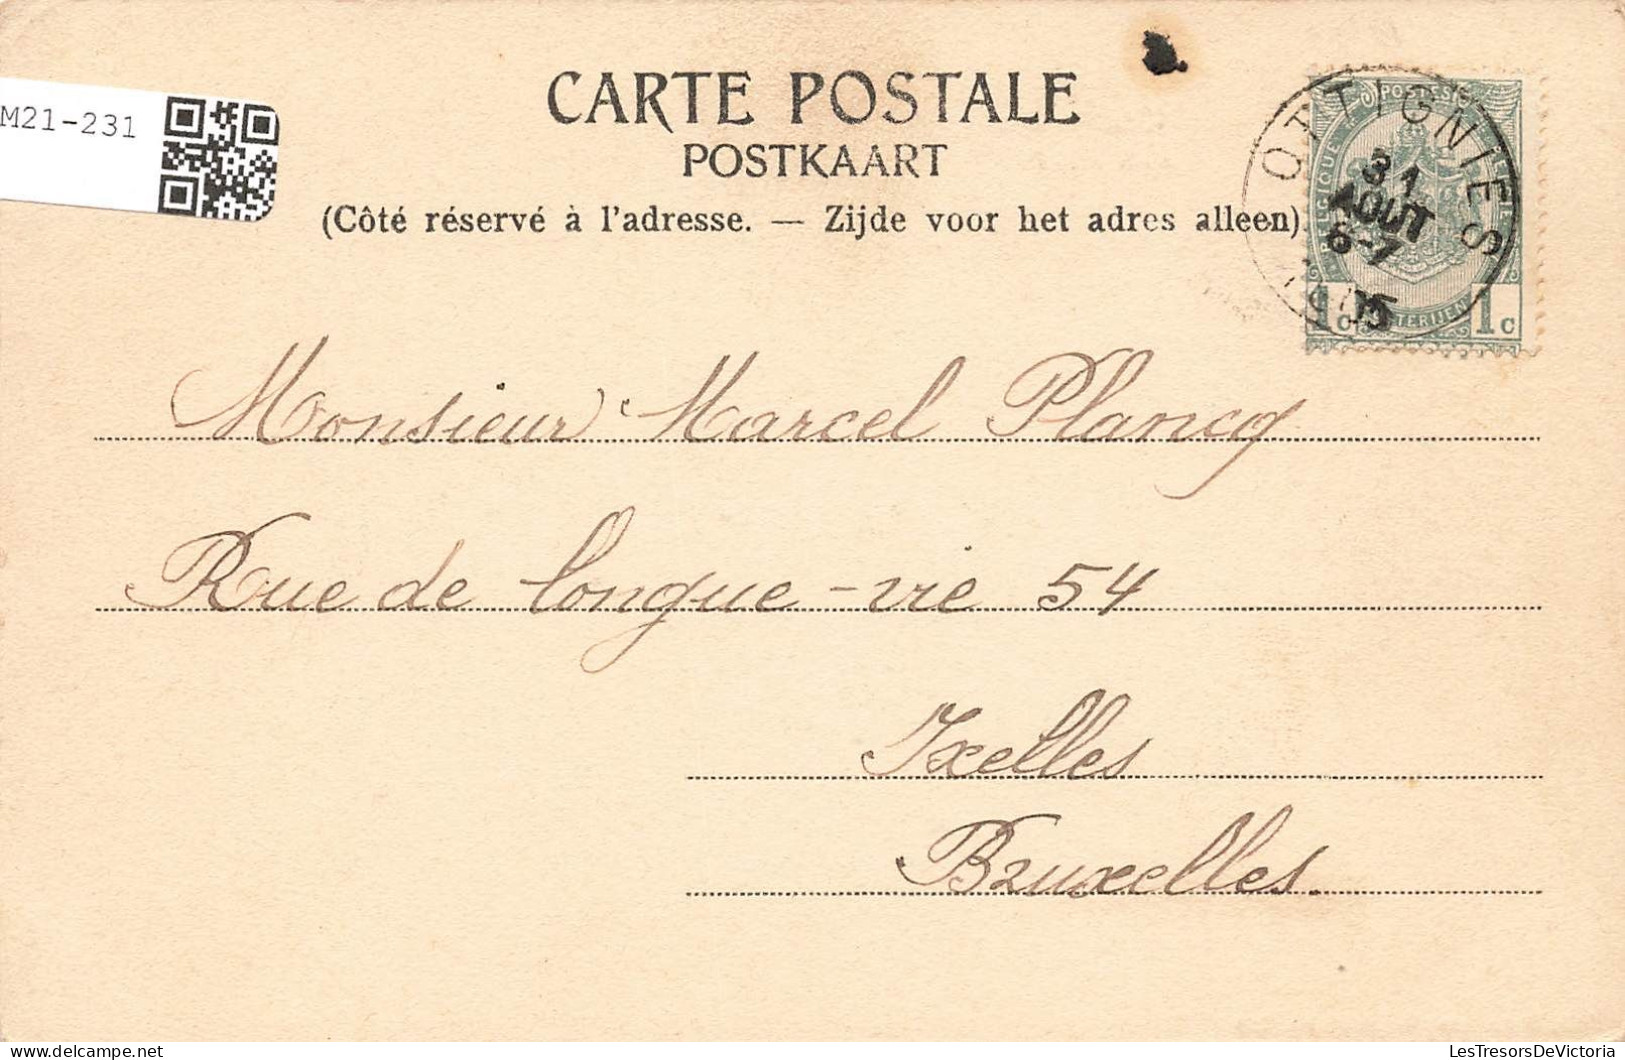 BELGIQUE - Nivelles - Limelette - Château des Bois - Carte postale ancienne